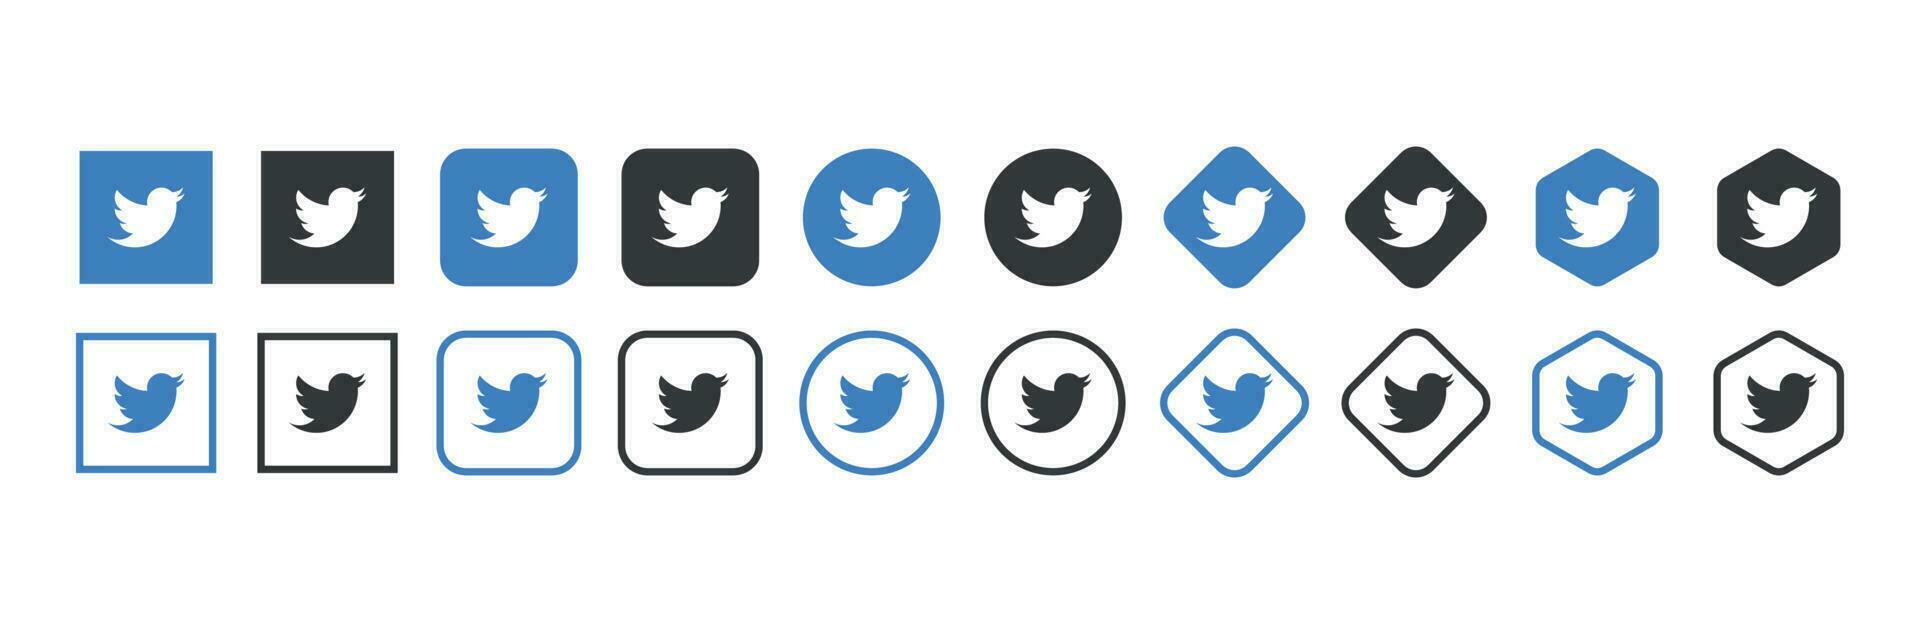 gorjeo logo icono en varios formularios, social medios de comunicación icono vector